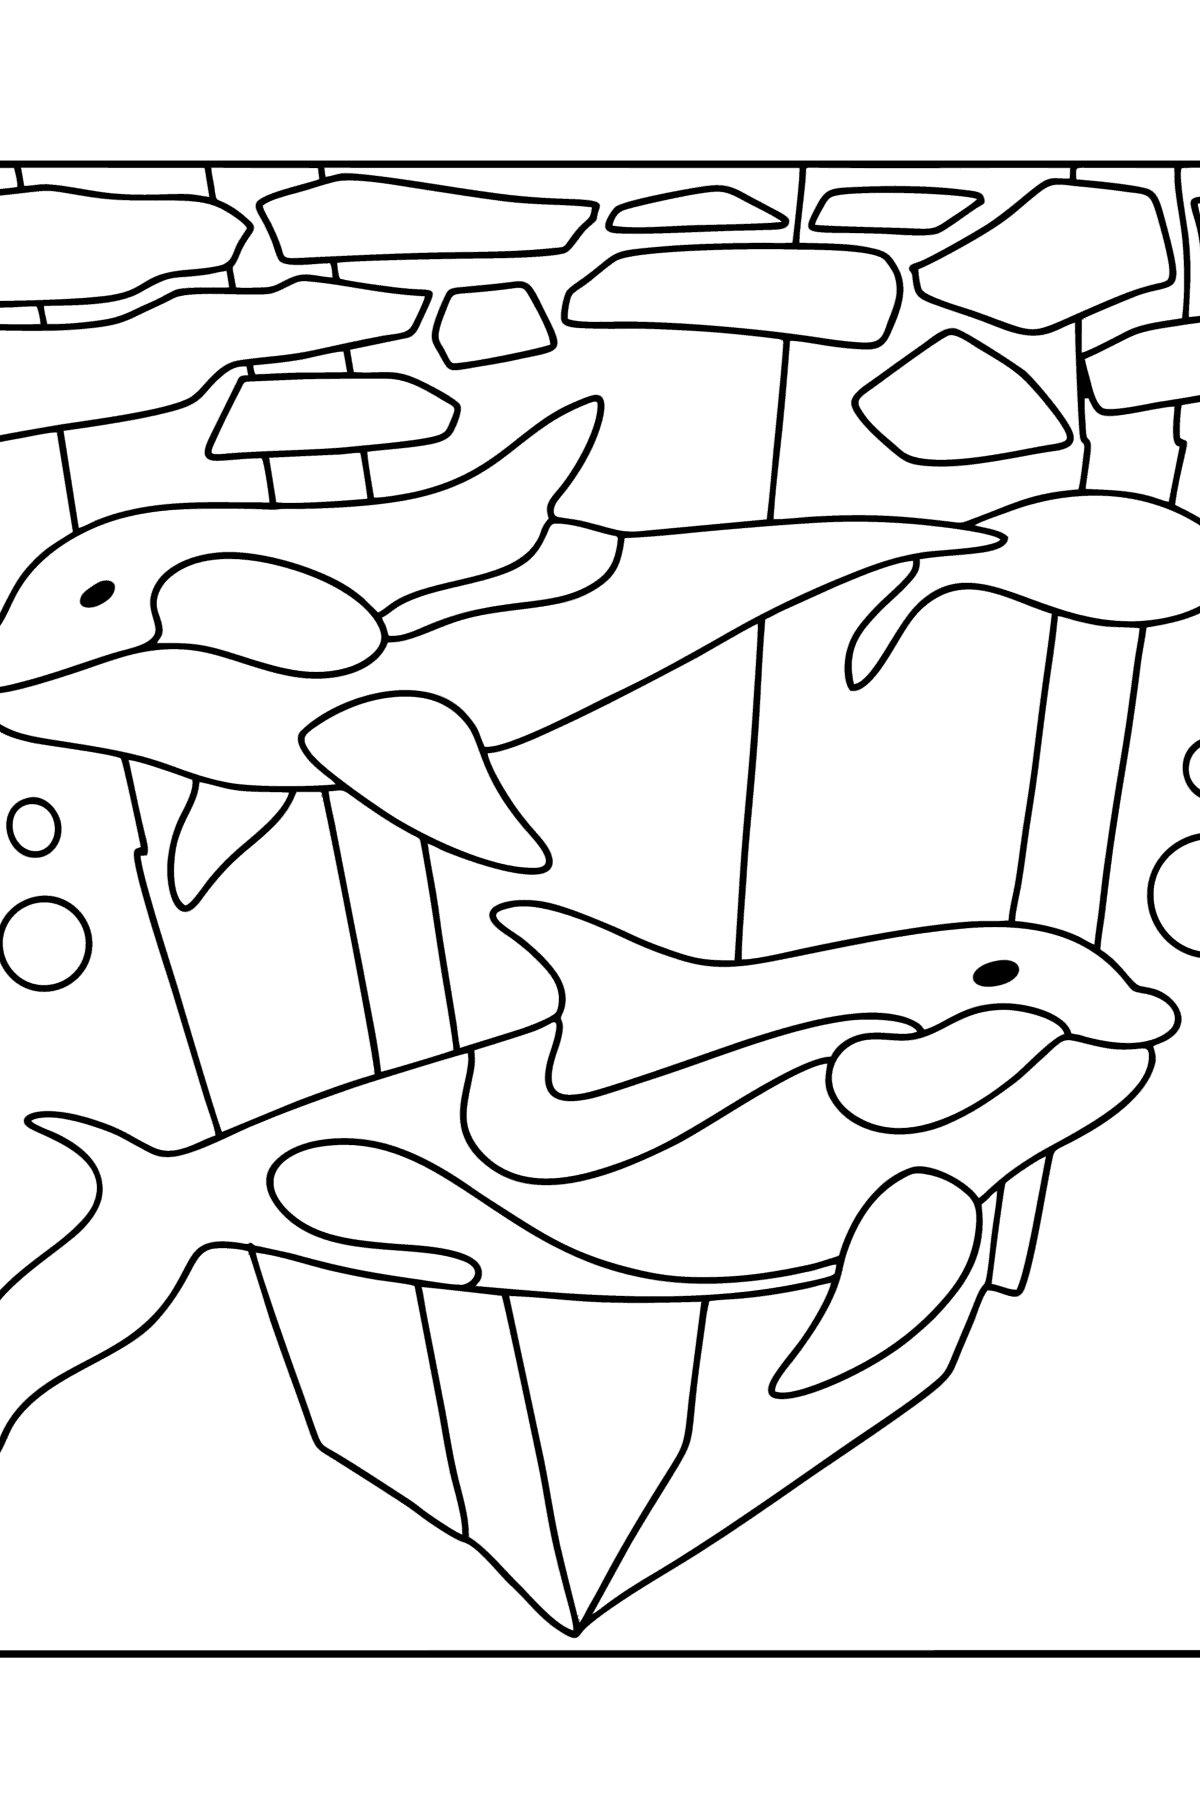 Desenho de Baleias assassinas para colorir - Imagens para Colorir para Crianças